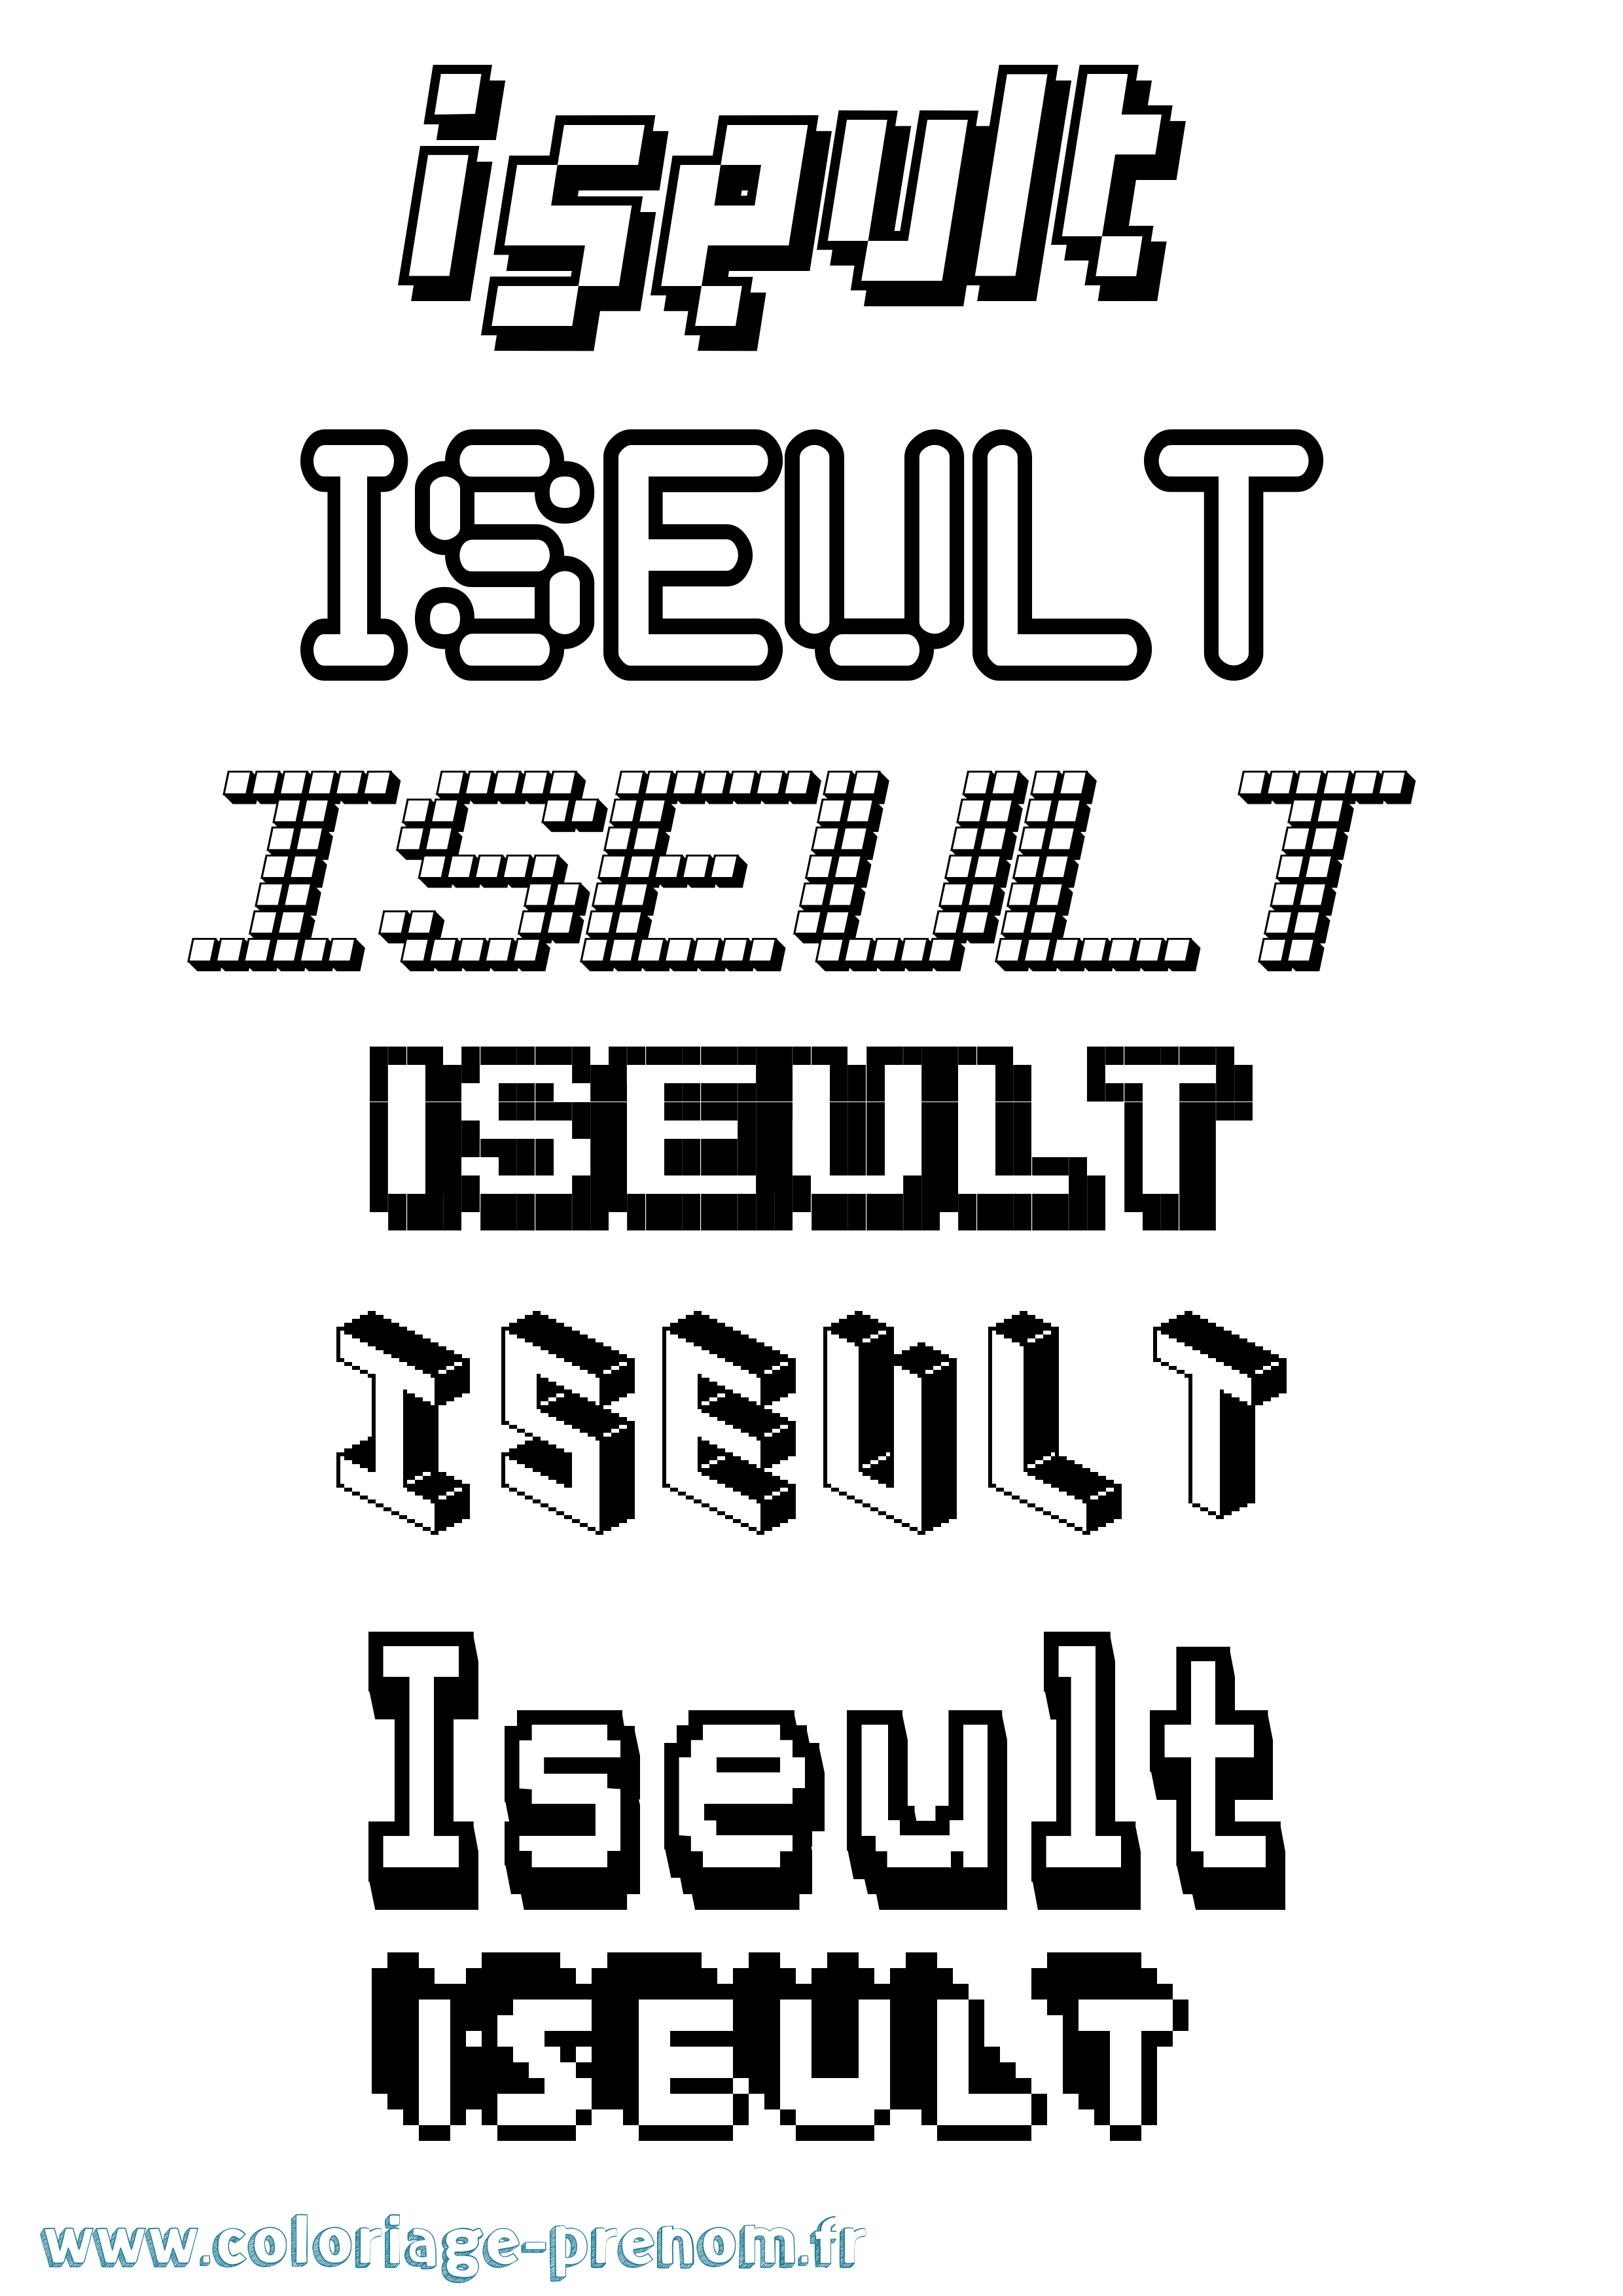 Coloriage prénom Iseult Pixel